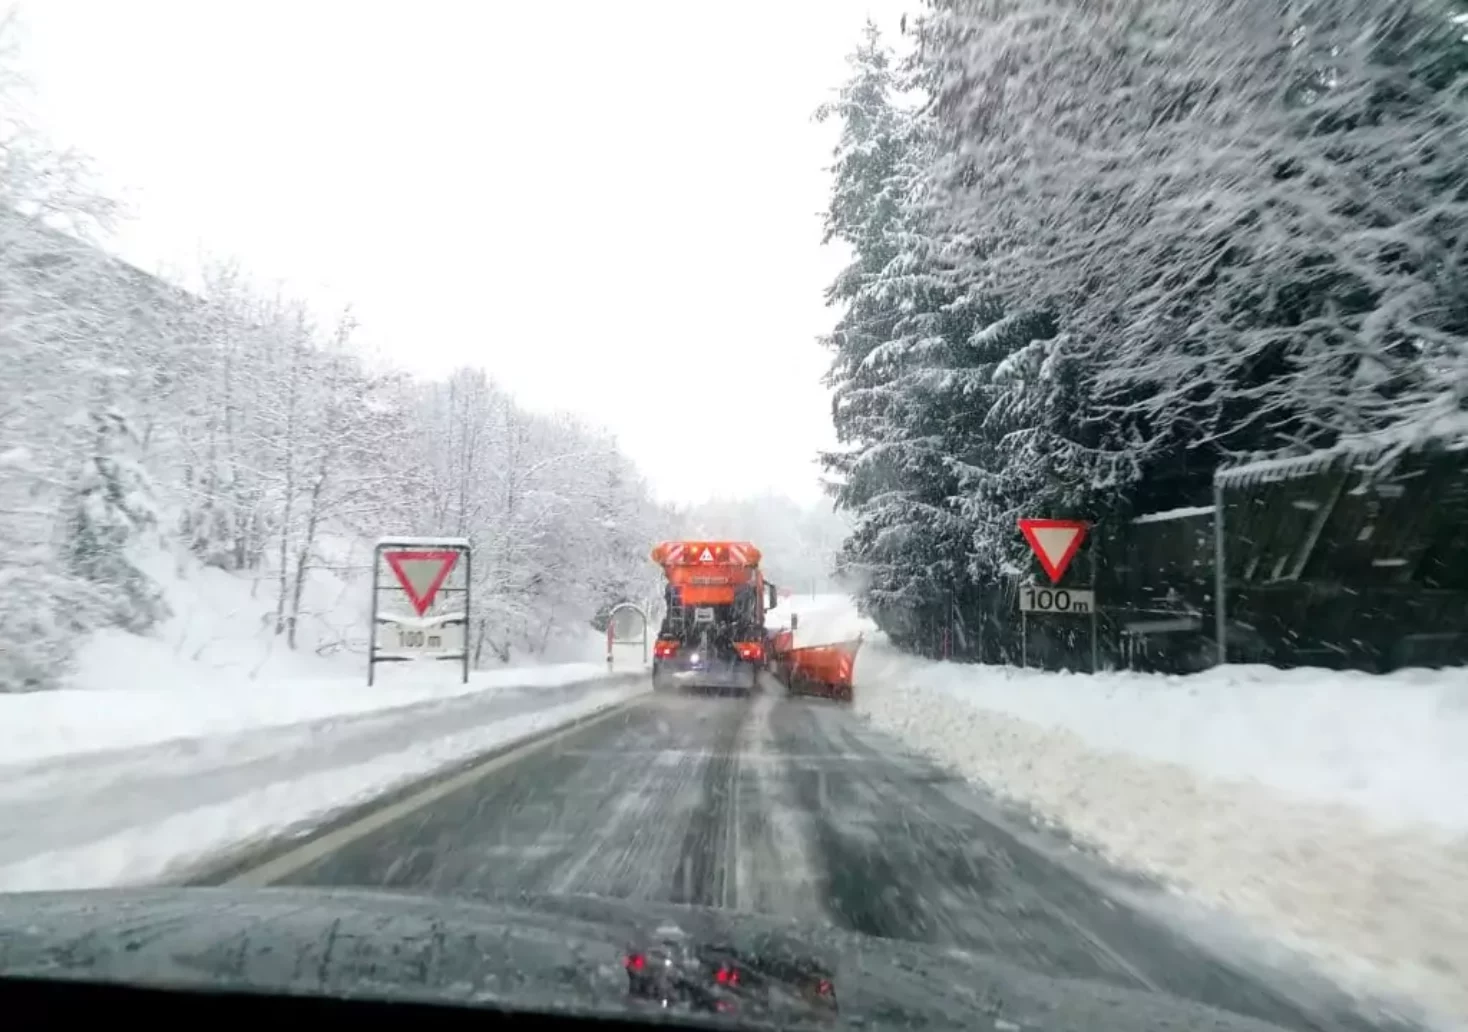 Bild auf 5min.at zeigt eine Straße voll mit Schnee und ein Schneeräumfahrzeug.